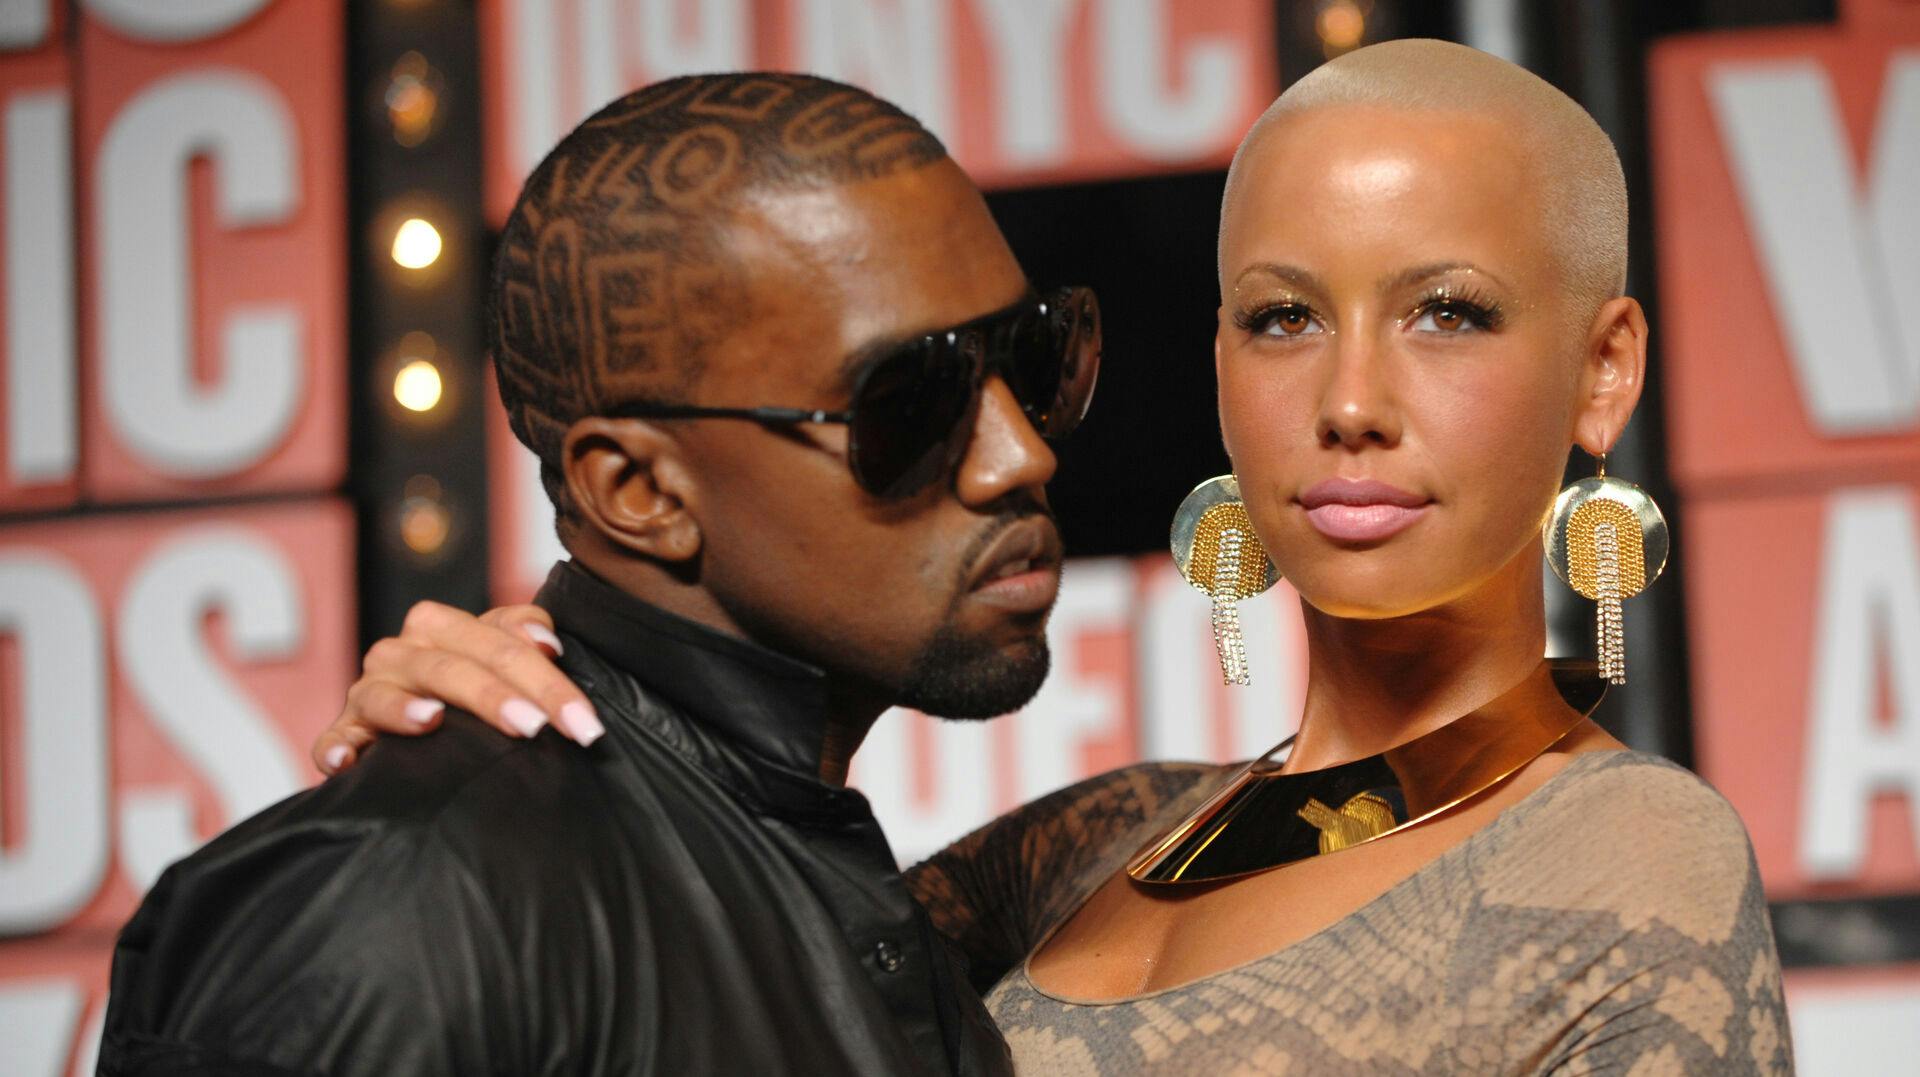 Kanye West med ekskæresten Amber Rose til MTV Video Music Awards i september 2009.